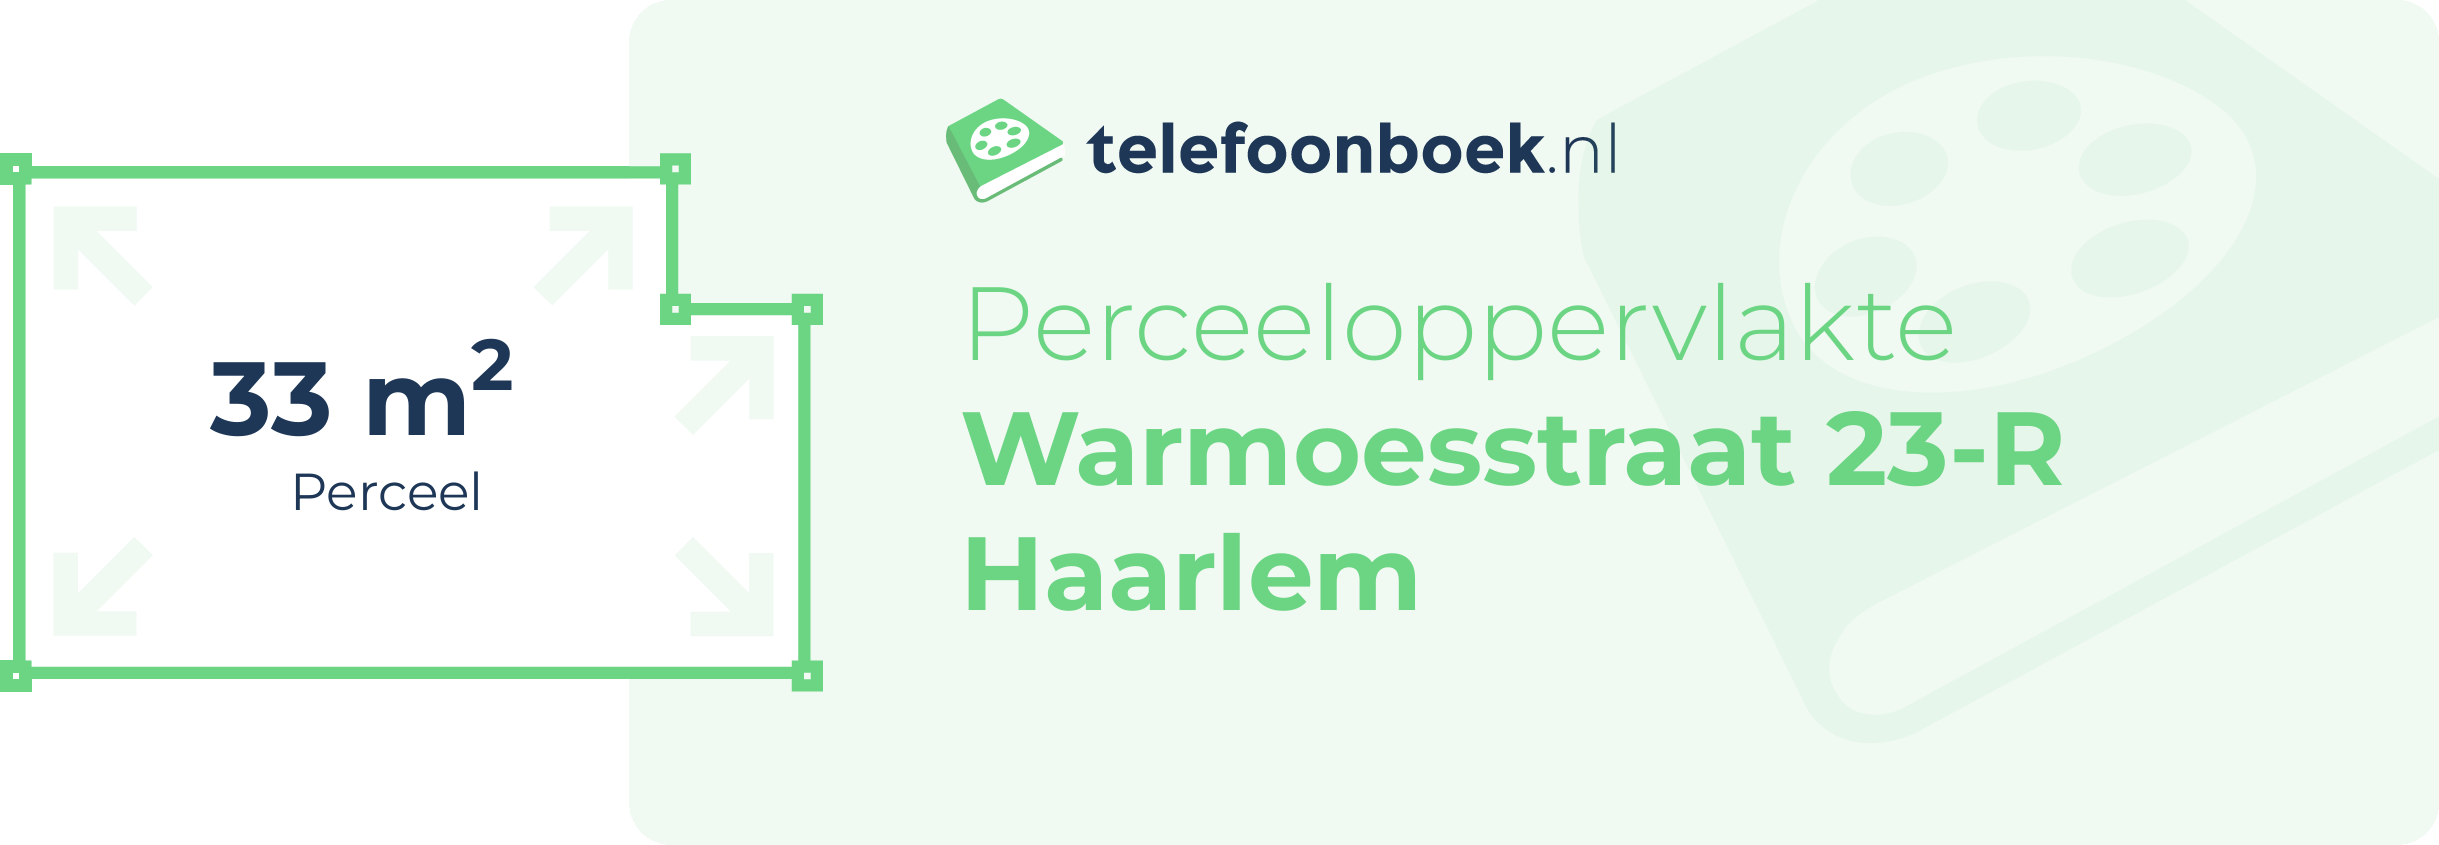 Perceeloppervlakte Warmoesstraat 23-R Haarlem